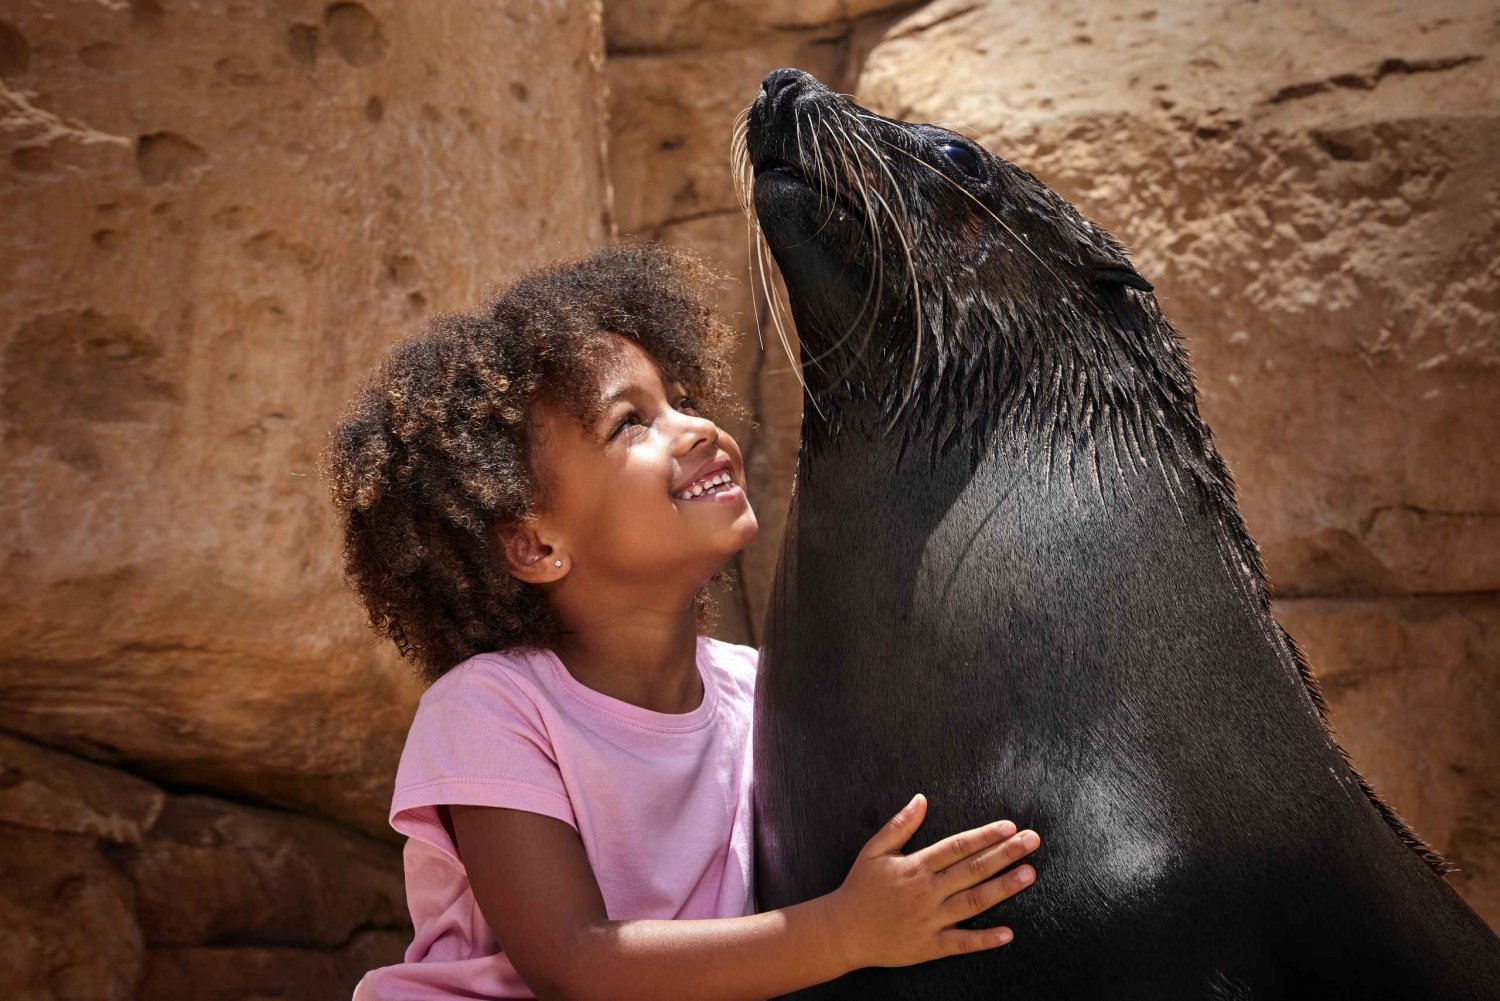 Dubai: Dolphin & Sea Lion Photo Fun at Atlantis